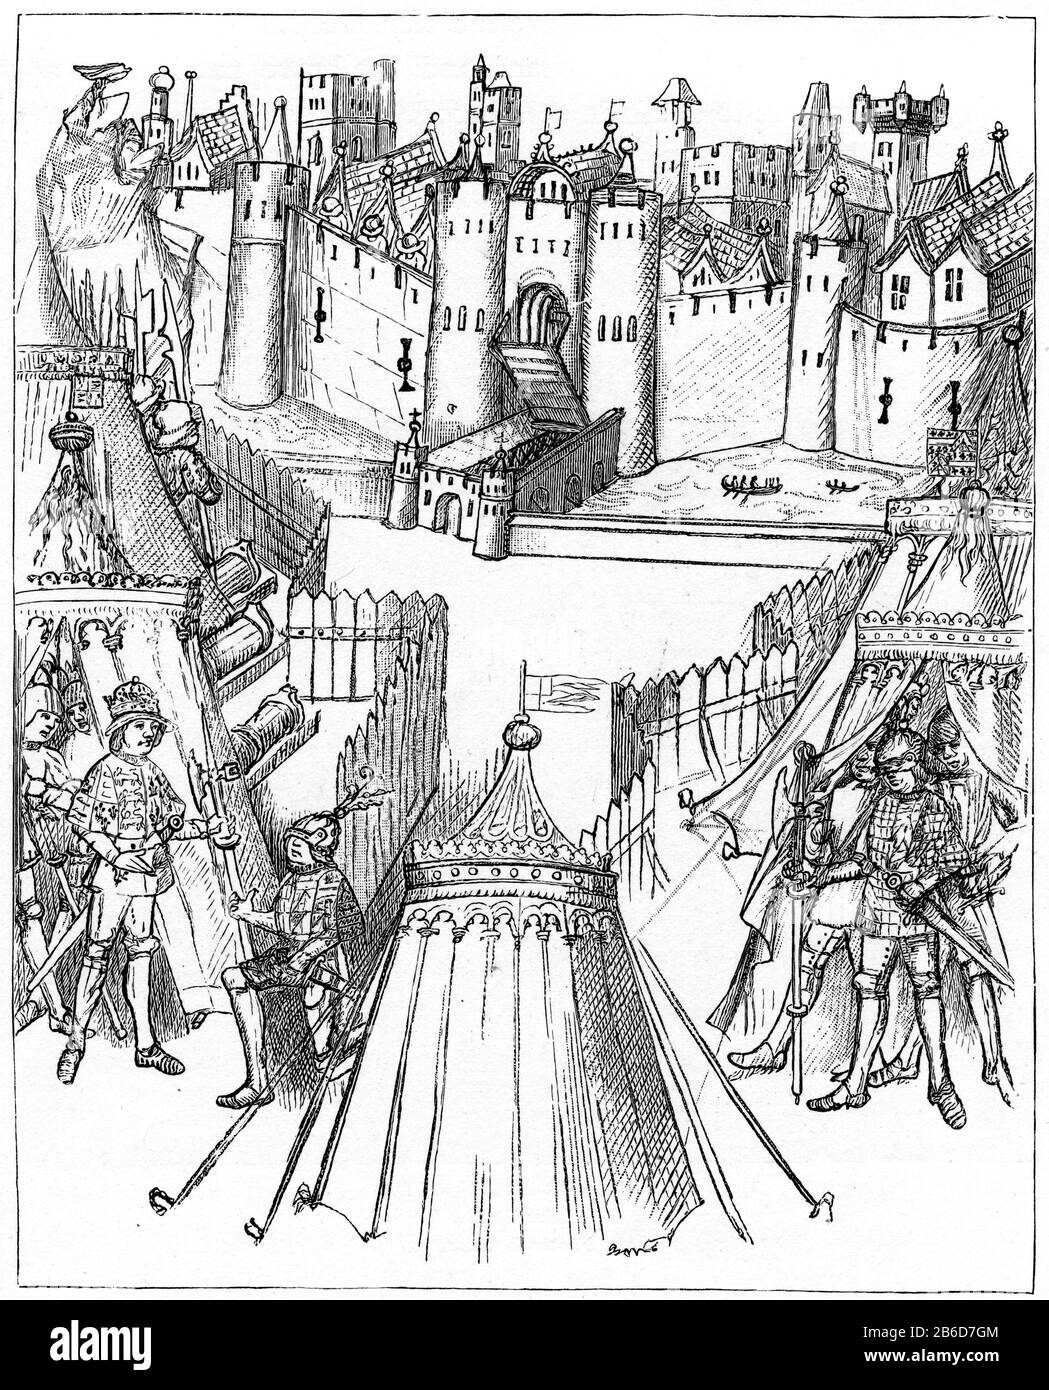 Sitio de Rouen, 1418. Richard Beauchamp, conde de Warwick (1382-1439), con Enrique V (1386-1422) en el sitio de Rouen, 1418. El asedio de Rouen (29 de julio de 1418 - 19 de enero de 1419) fue un acontecimiento importante en la Guerra de los cien años, donde las fuerzas inglesas leales a Enrique V capturaron a Rouen, la capital de Normandía, de los franceses normandos. Desde Beauchamp Pageants c1485. Foto de stock